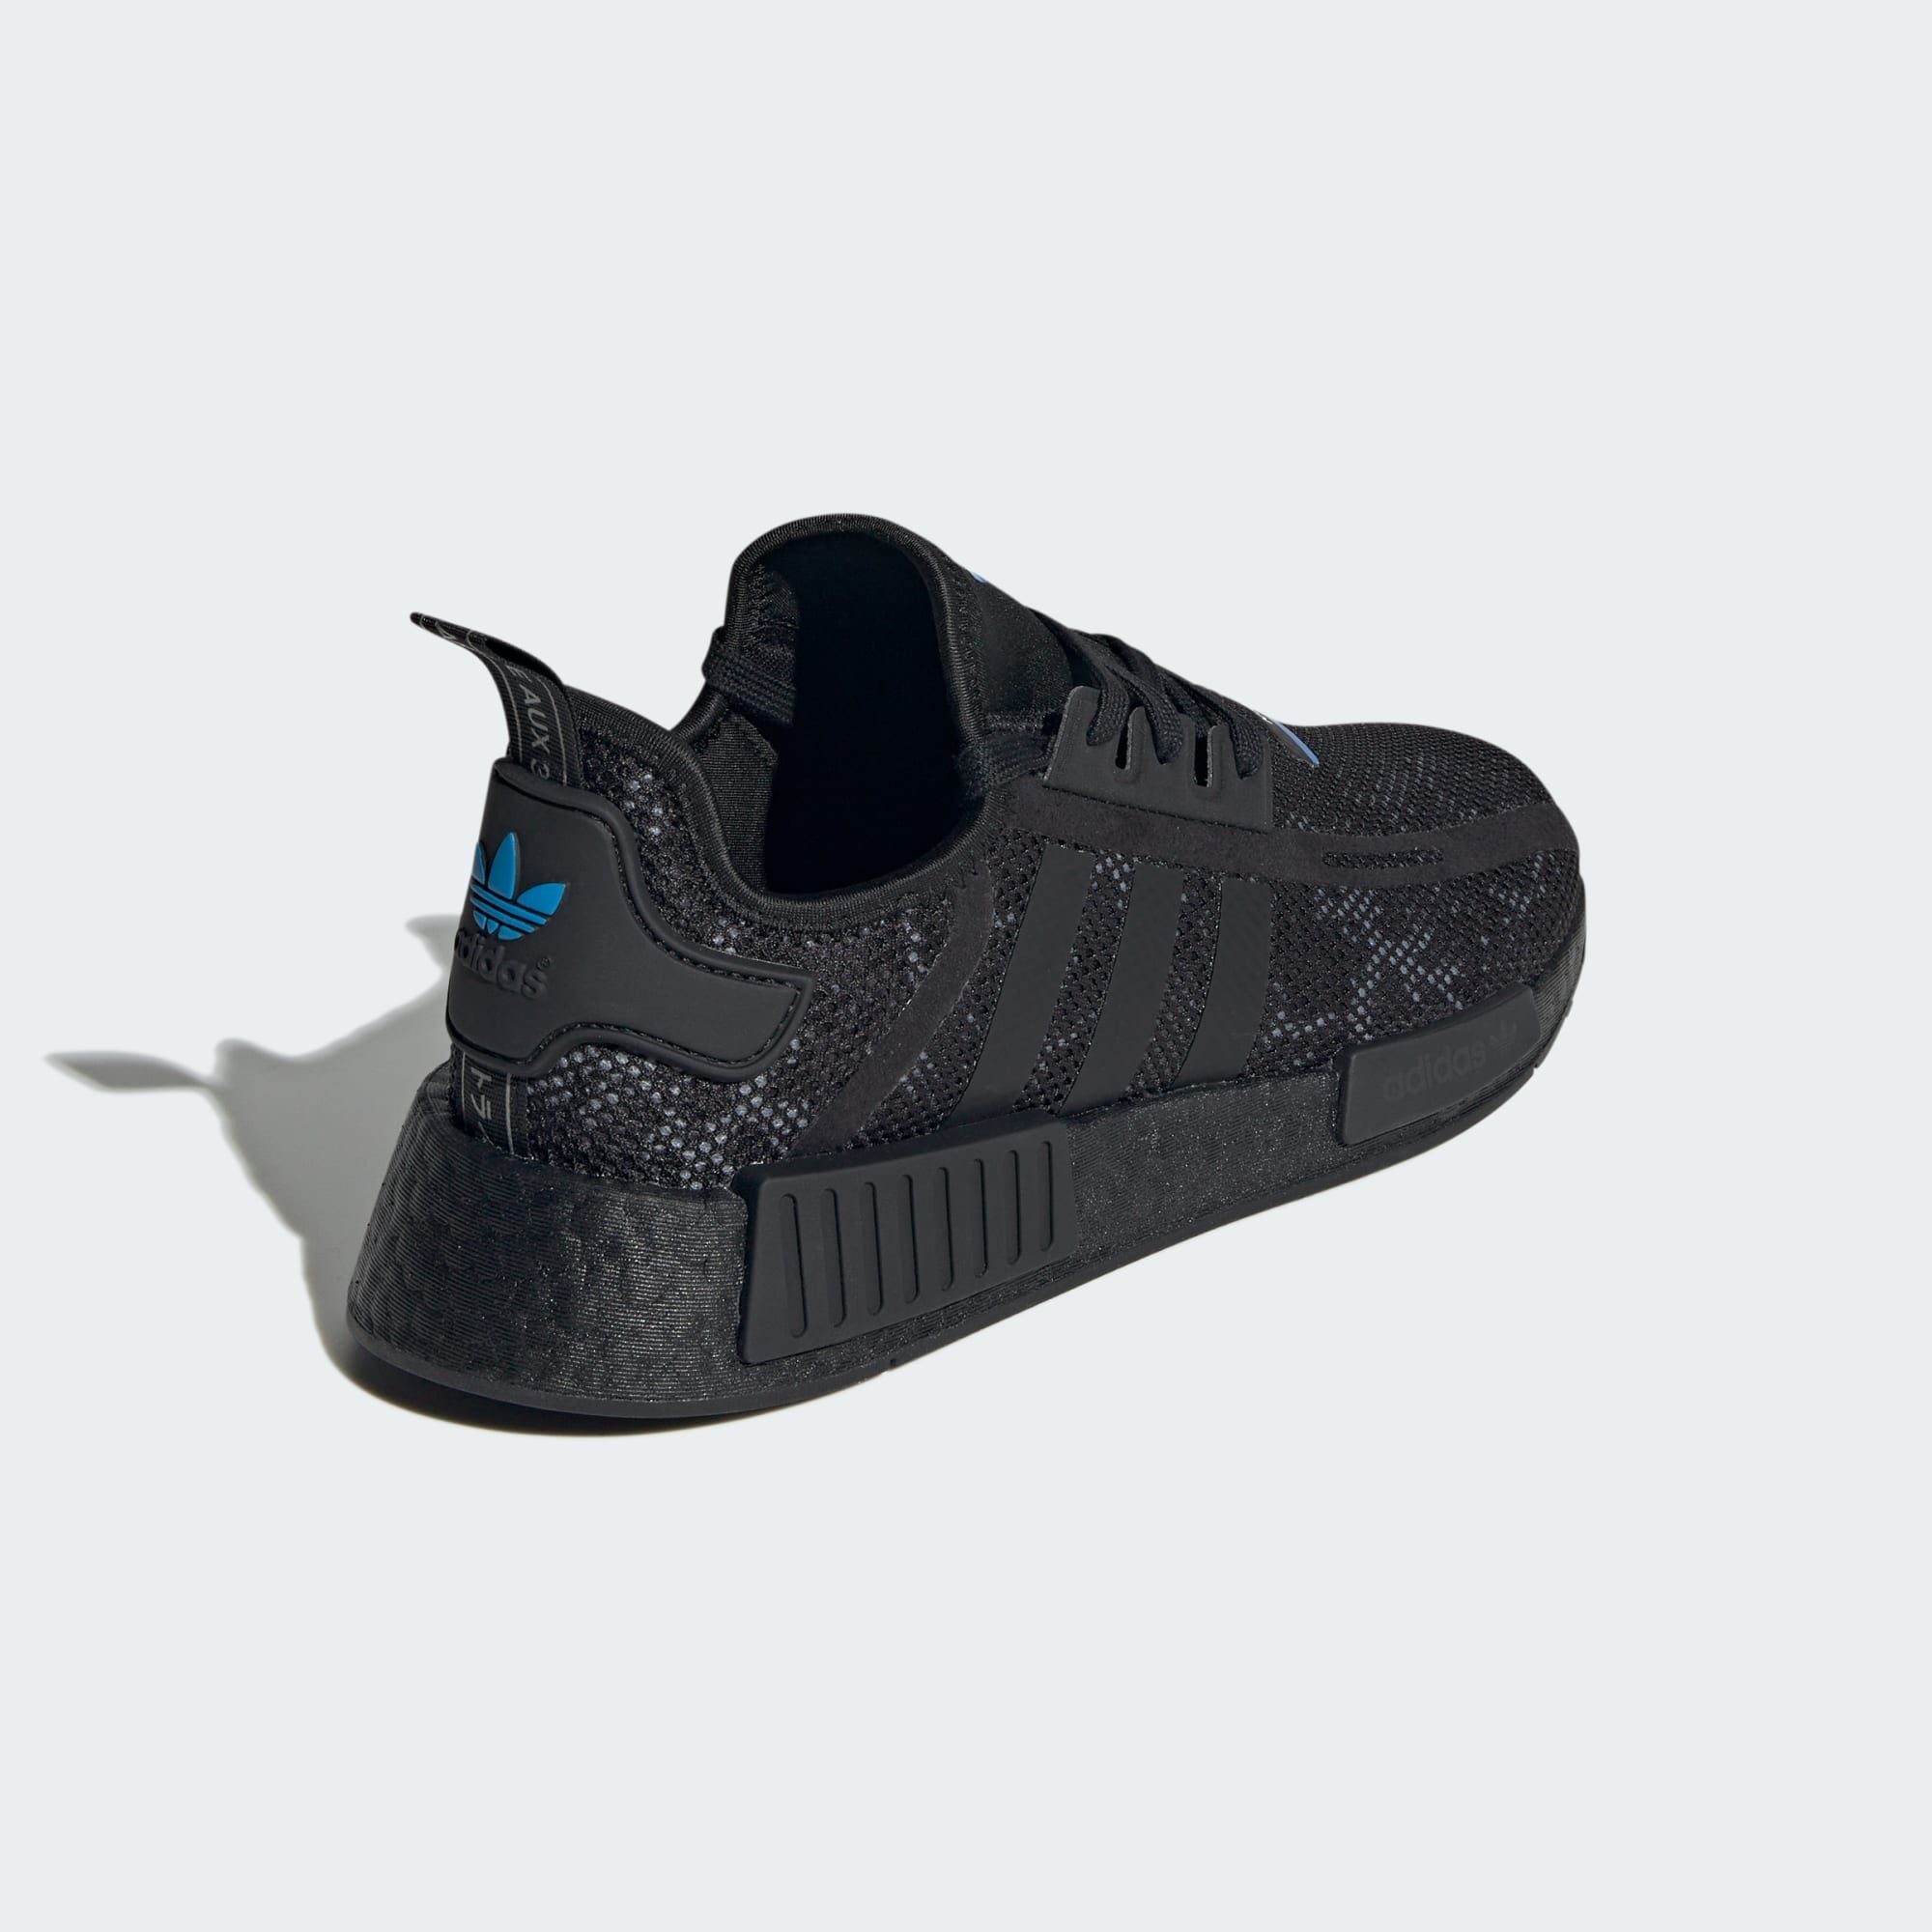 / Five Carbon Originals Black Core Grey SCHUH NMD_R1 / Sneaker adidas